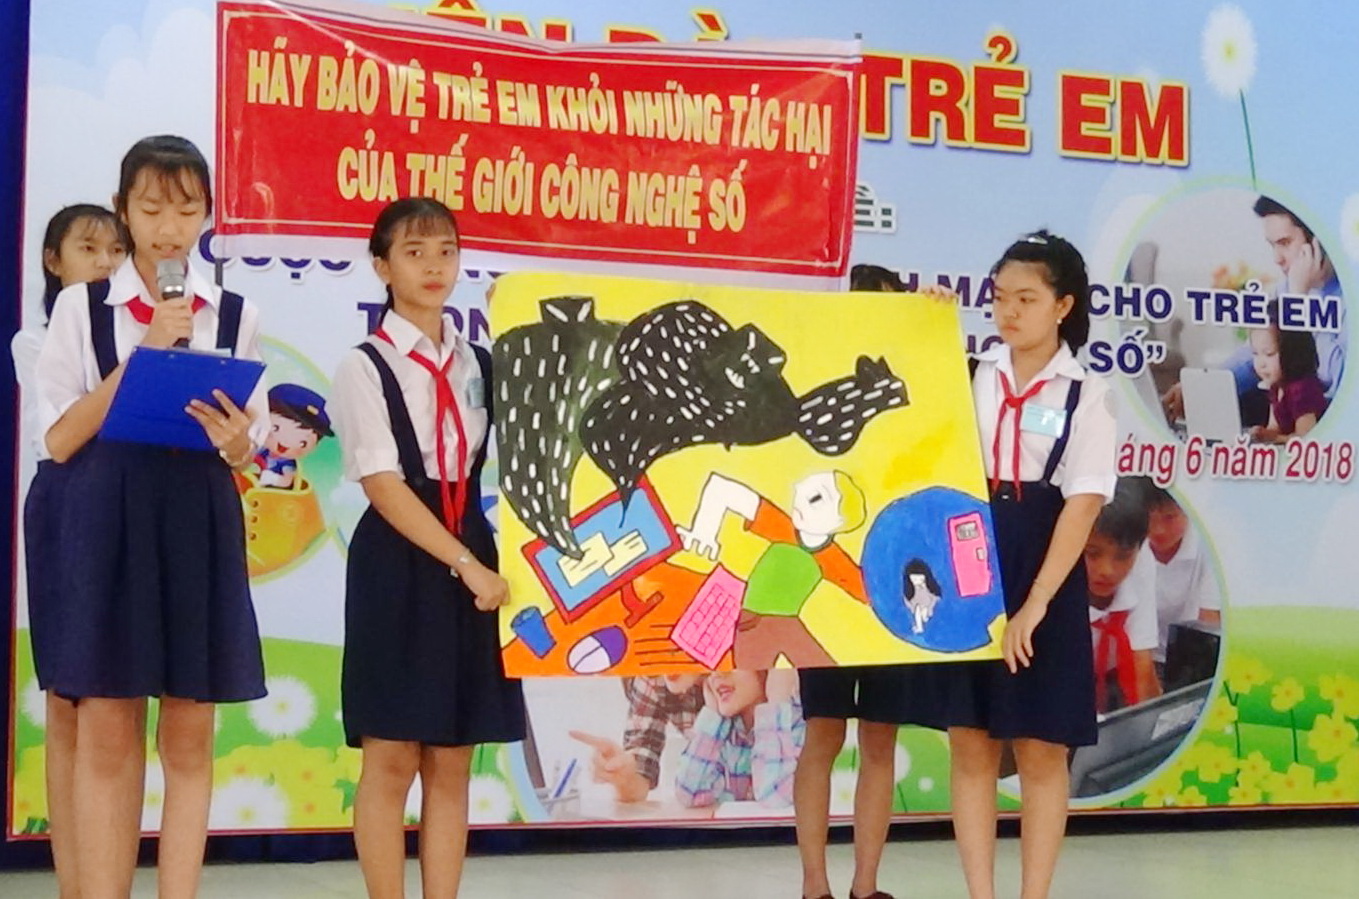 Phải hiểu đúng về bạo lực học đường - Báo Tây Ninh Online